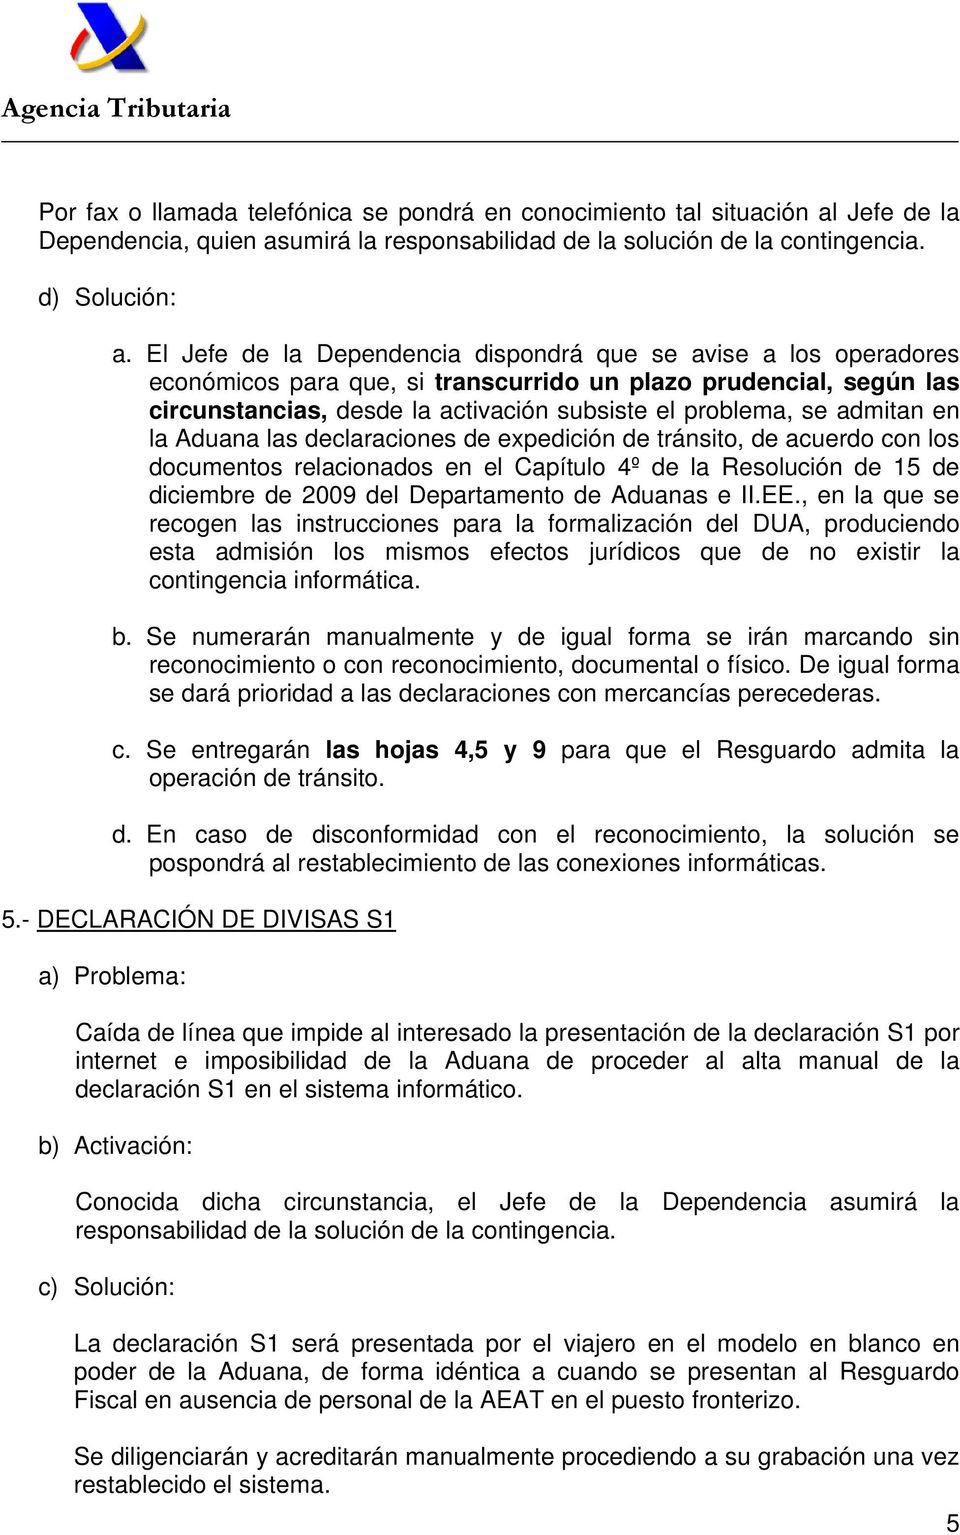 admitan en la Aduana las declaraciones de expedición de tránsito, de acuerdo con los documentos relacionados en el Capítulo 4º de la Resolución de 15 de diciembre de 2009 del Departamento de Aduanas